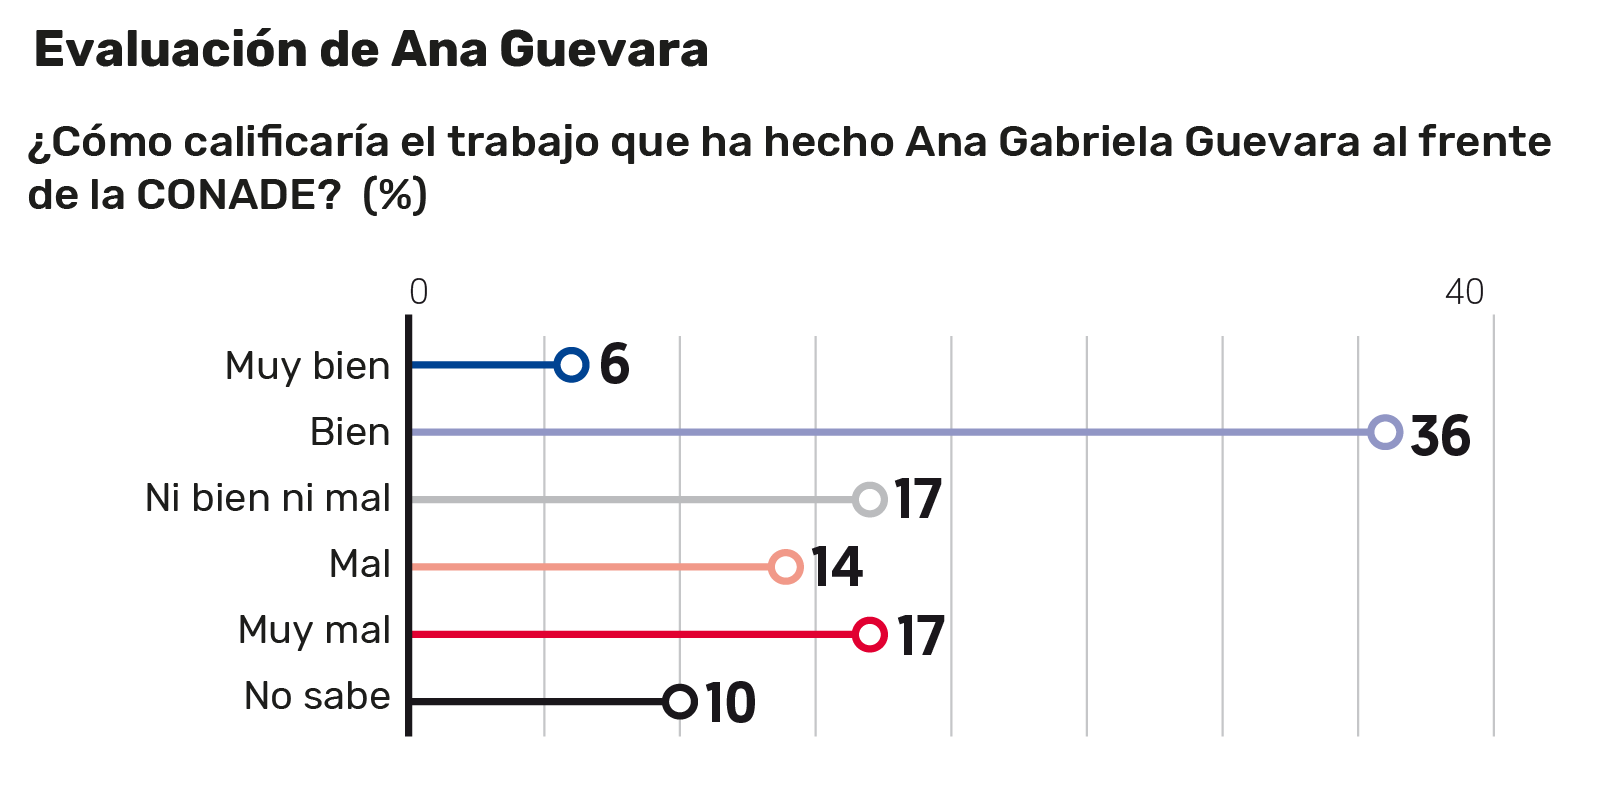 Ana Guevara, titular de Conade, recibe buena calificación